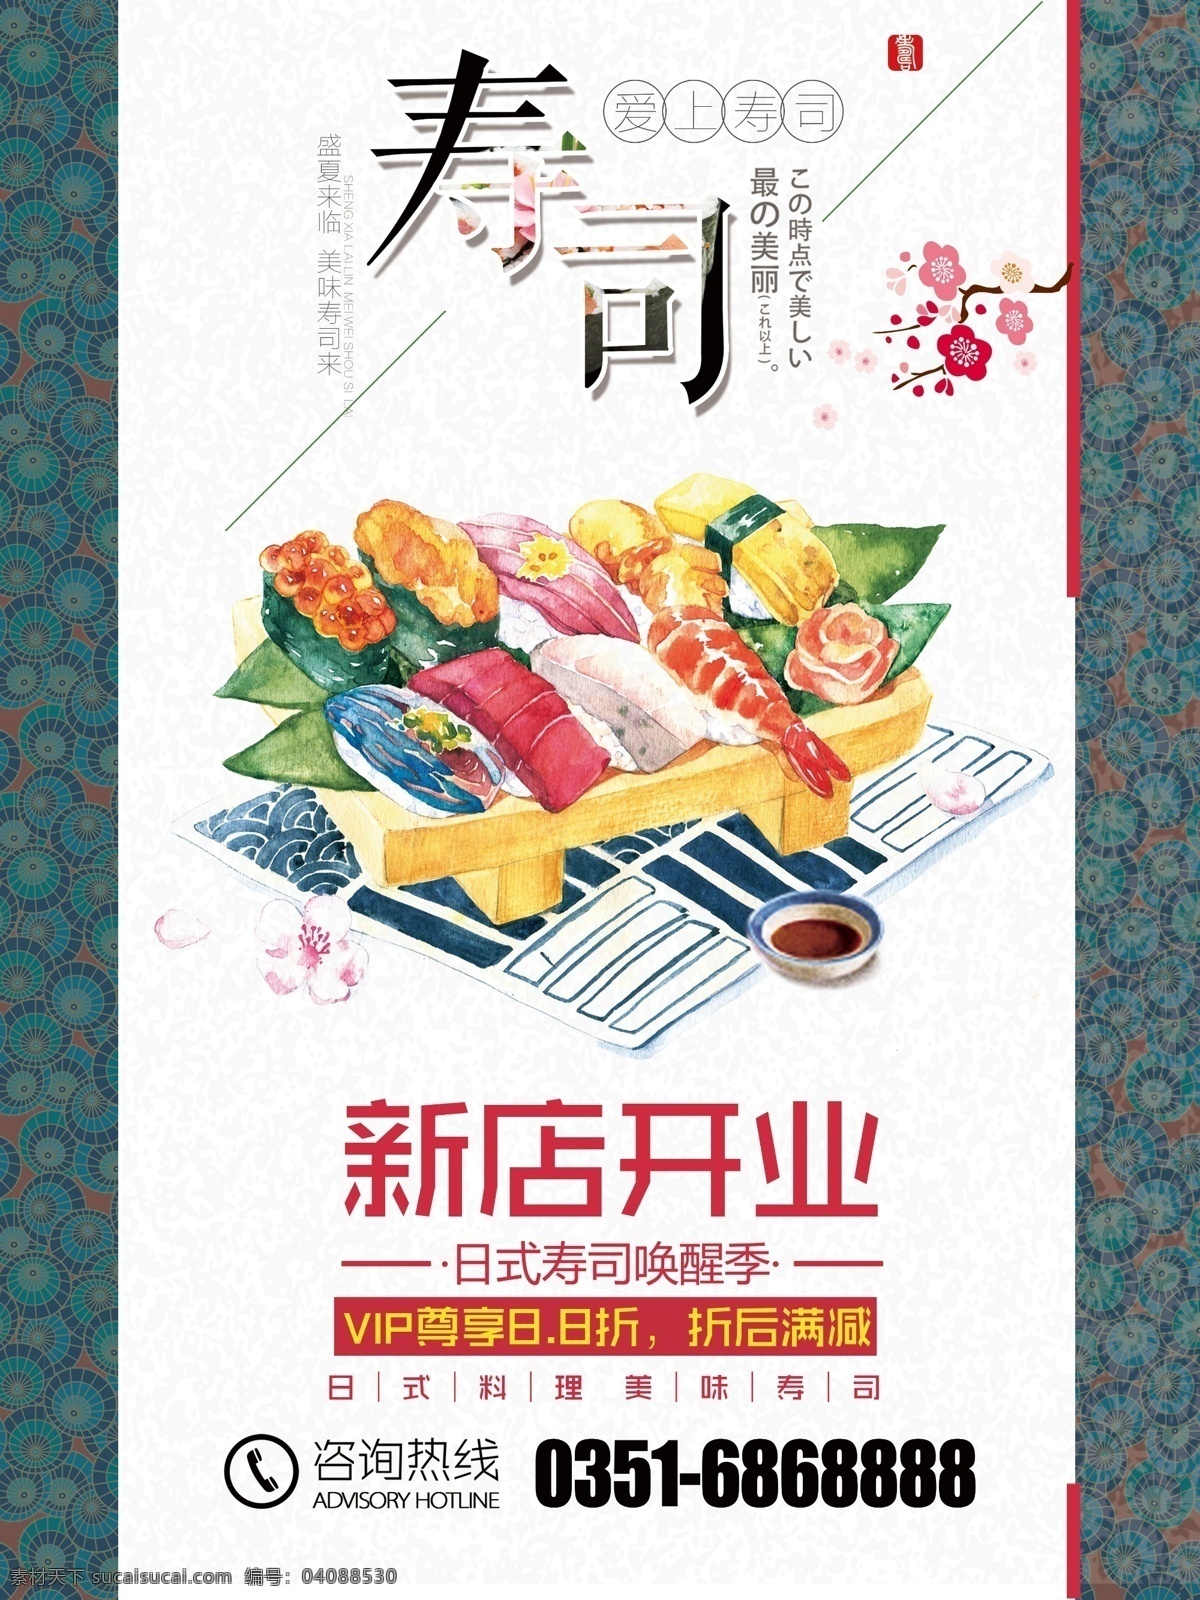 日本料理 日本 美食 寿司 海报 宣传 展板 传单 日本美食 寿司海报宣 传展板传单 新店开业 寿司海报 背景 宣传单